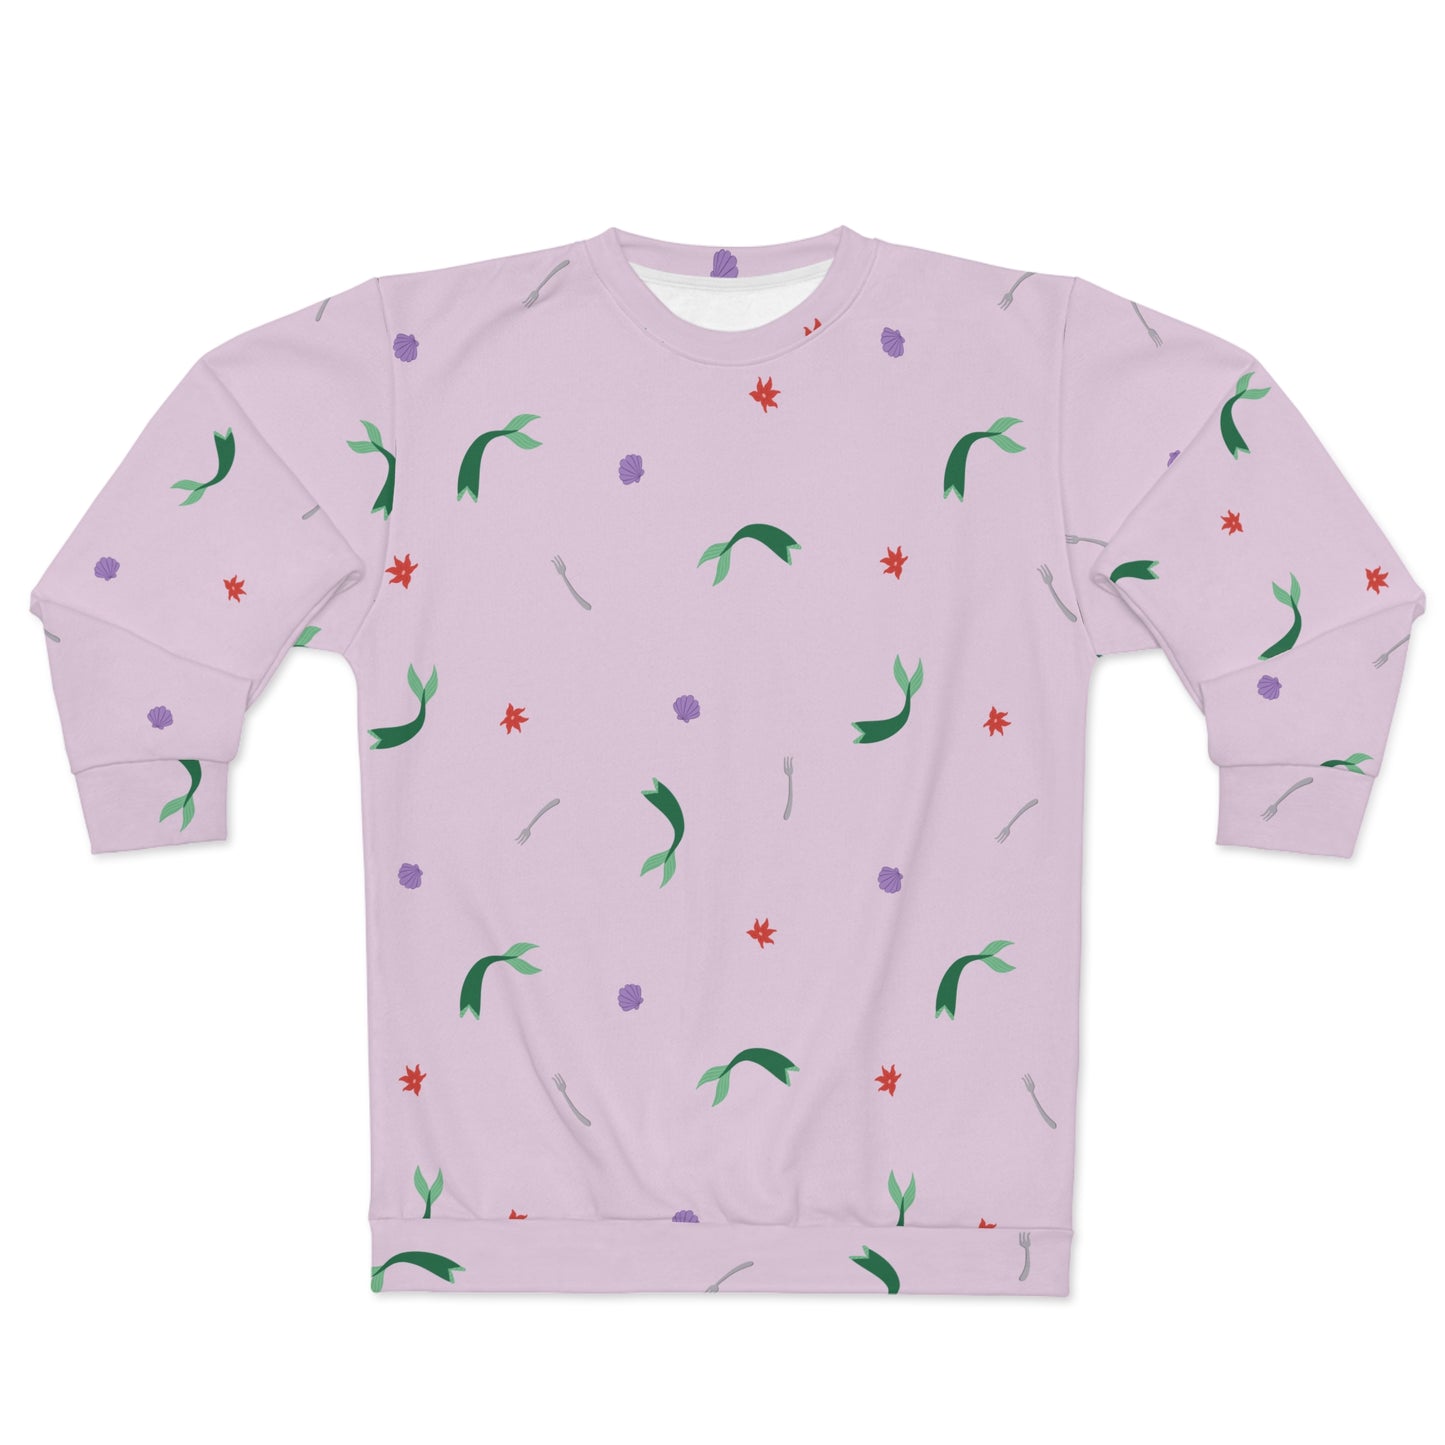 Ariel's Favorite Things - Little Mermaid Inspired Sweatshirt - Adult Unisex